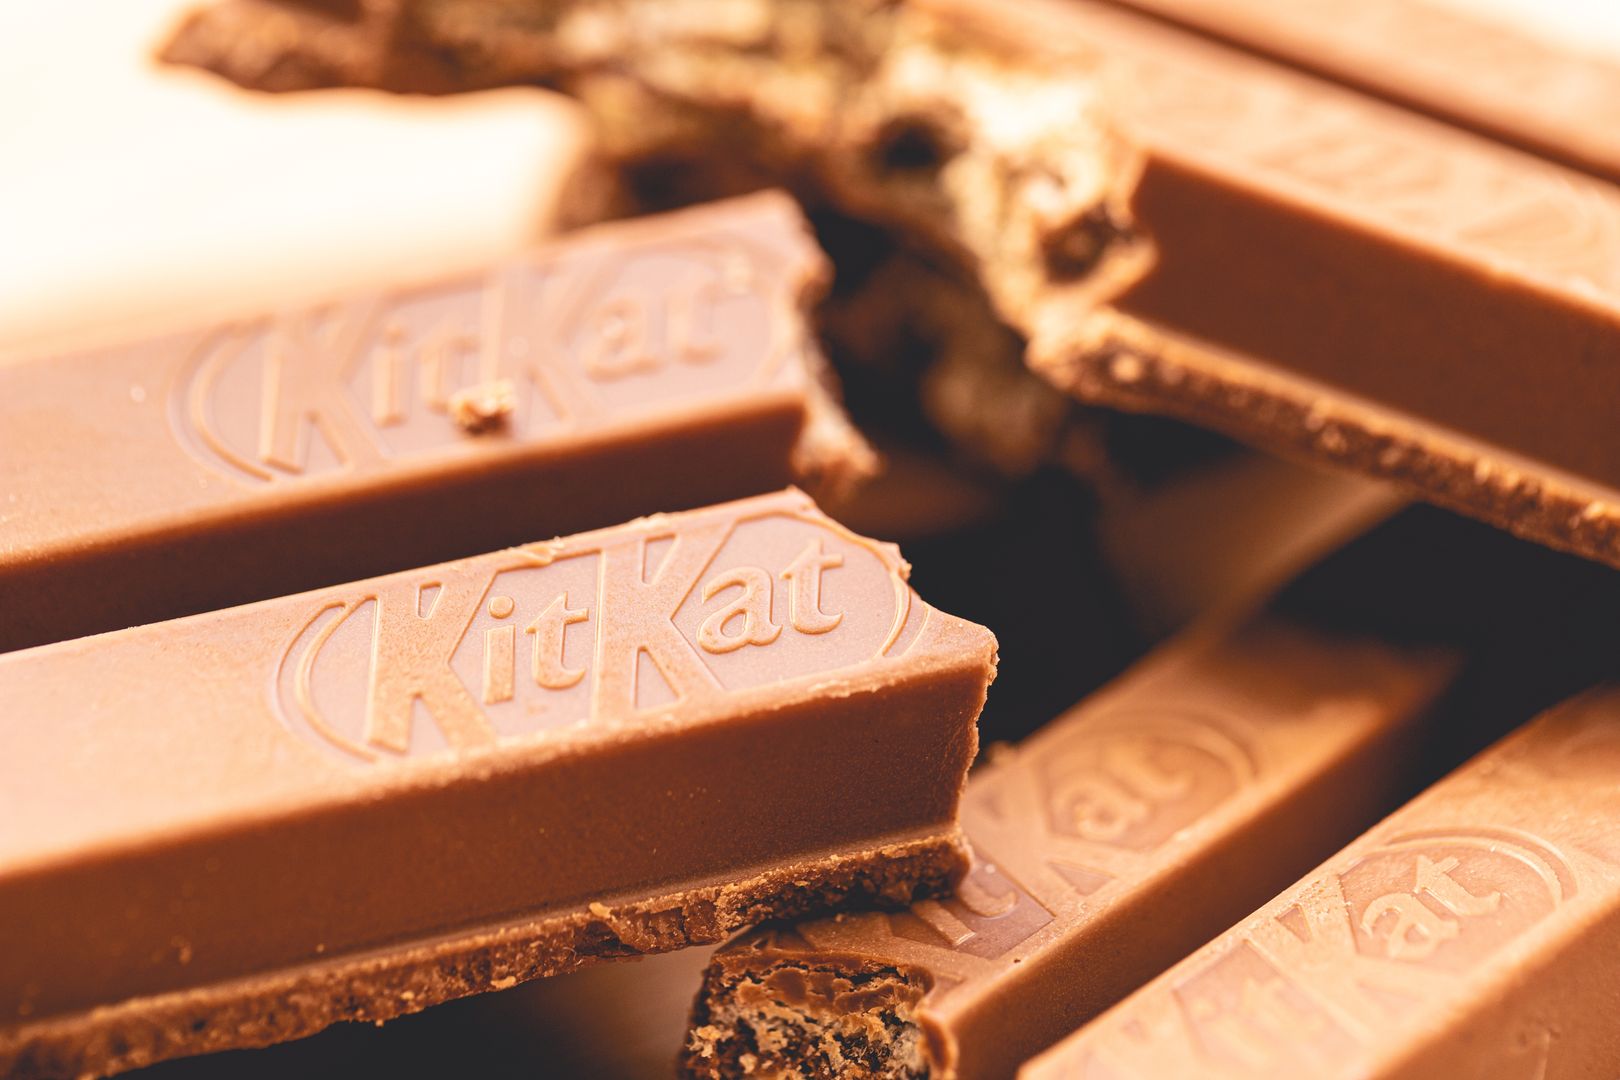 Z czego zrobiony jest KitKat? Będziecie bardzo zaskoczeni